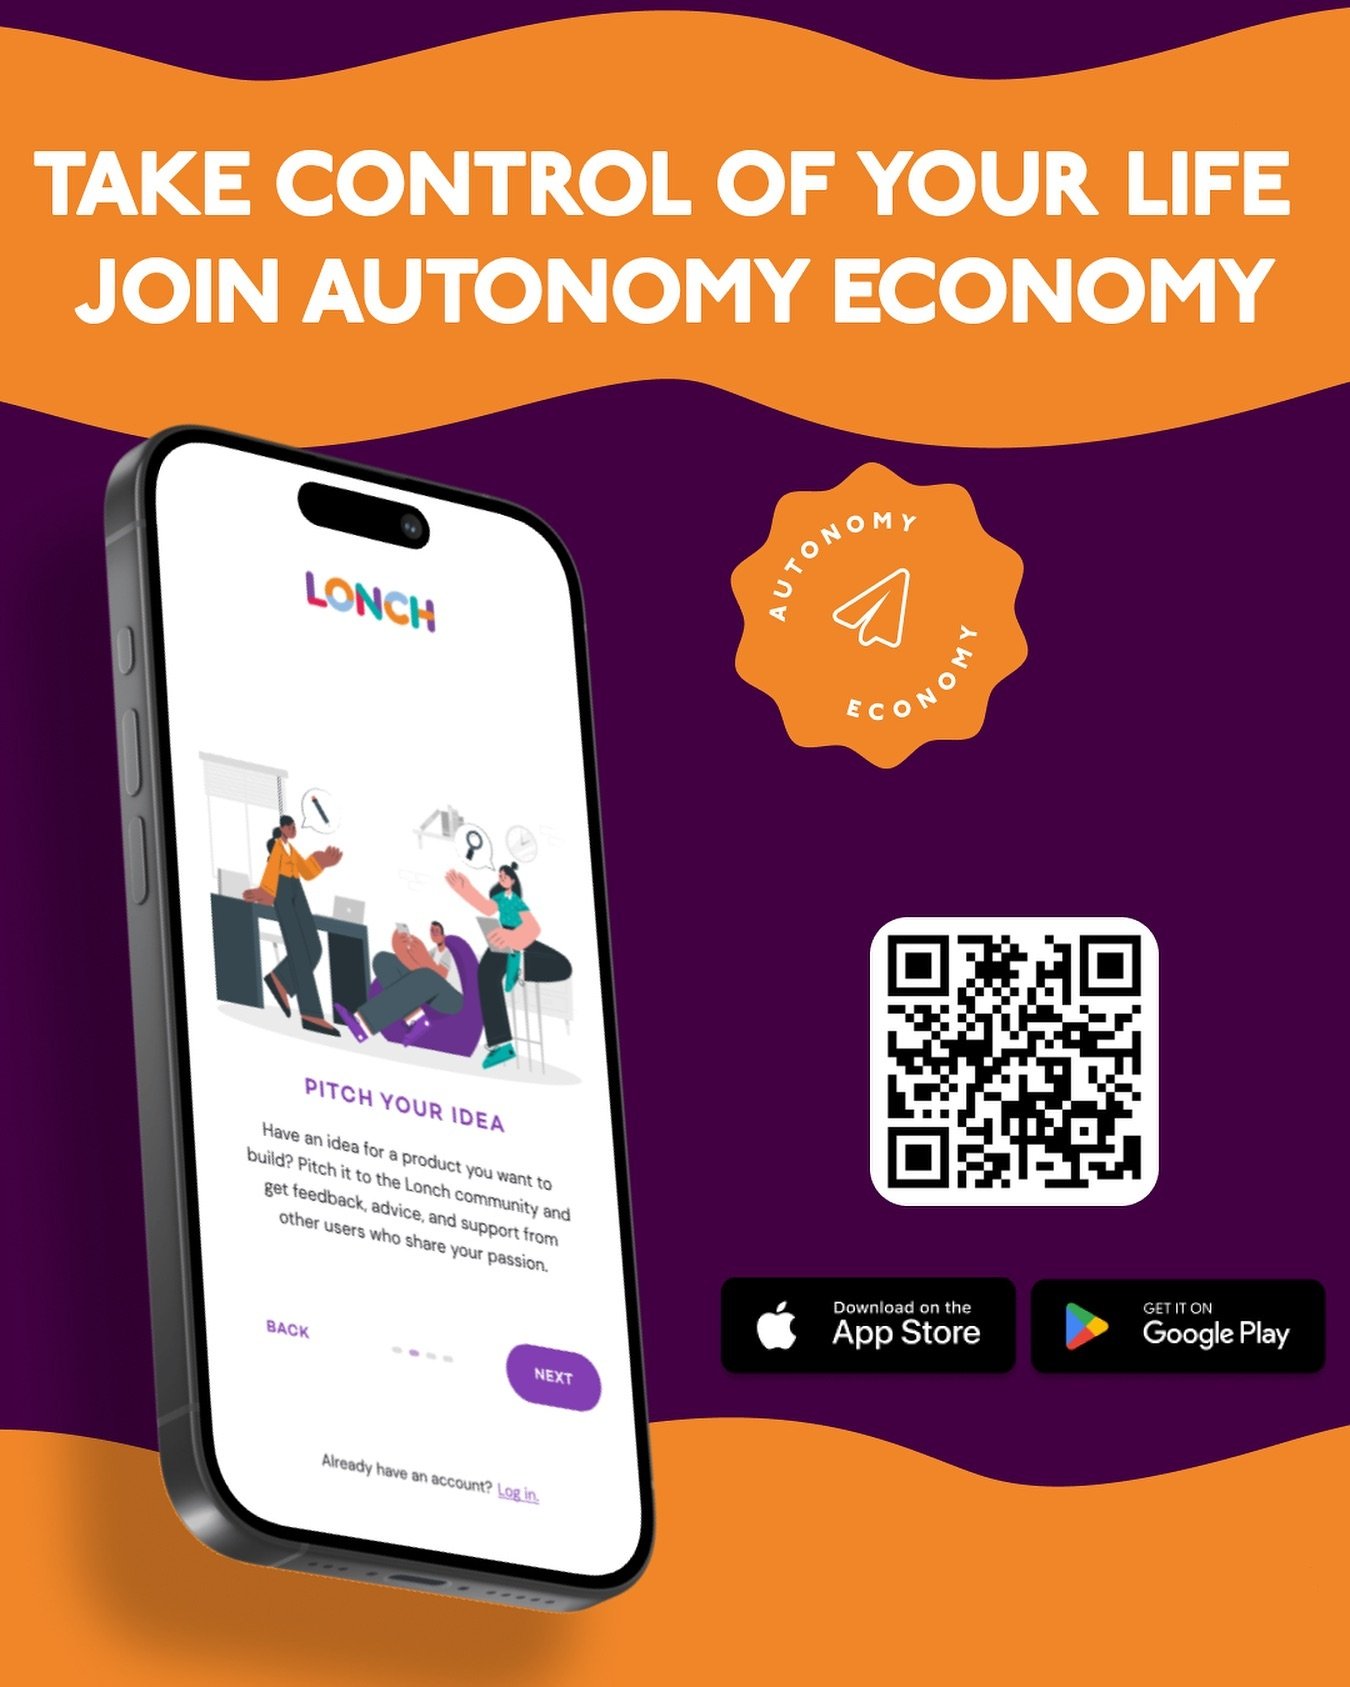 Join autonomy economy! 

#lonchapp
#community 
#autonomyeconomy